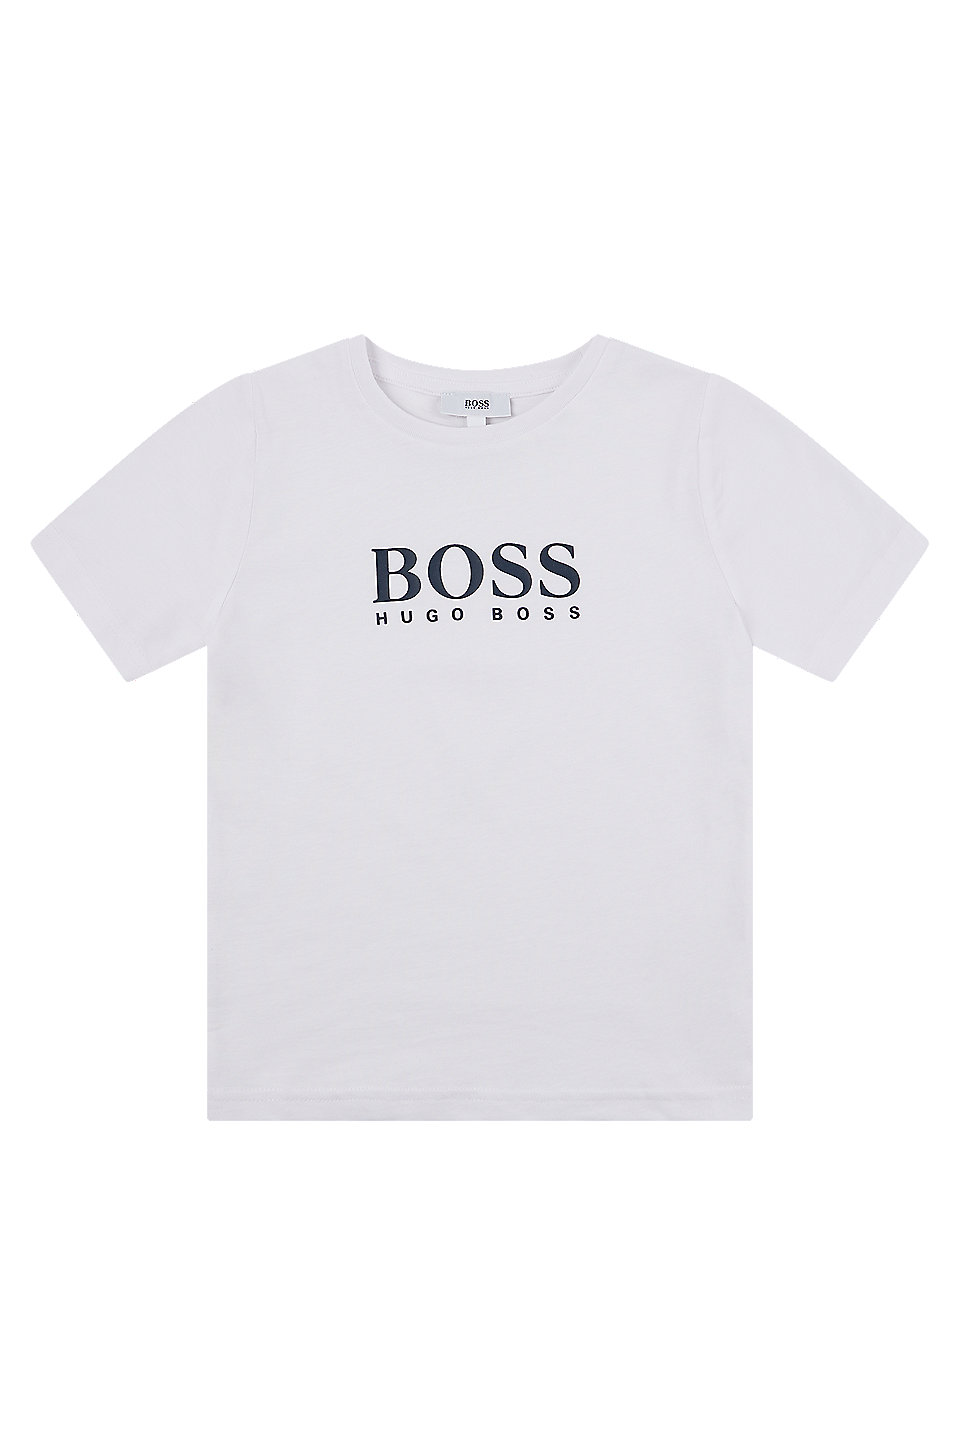 T-shirt per bambini in jersey di cotone con logo stampato HUGO BOSS Bambino Abbigliamento Top e t-shirt T-shirt T-shirt a maniche corte 